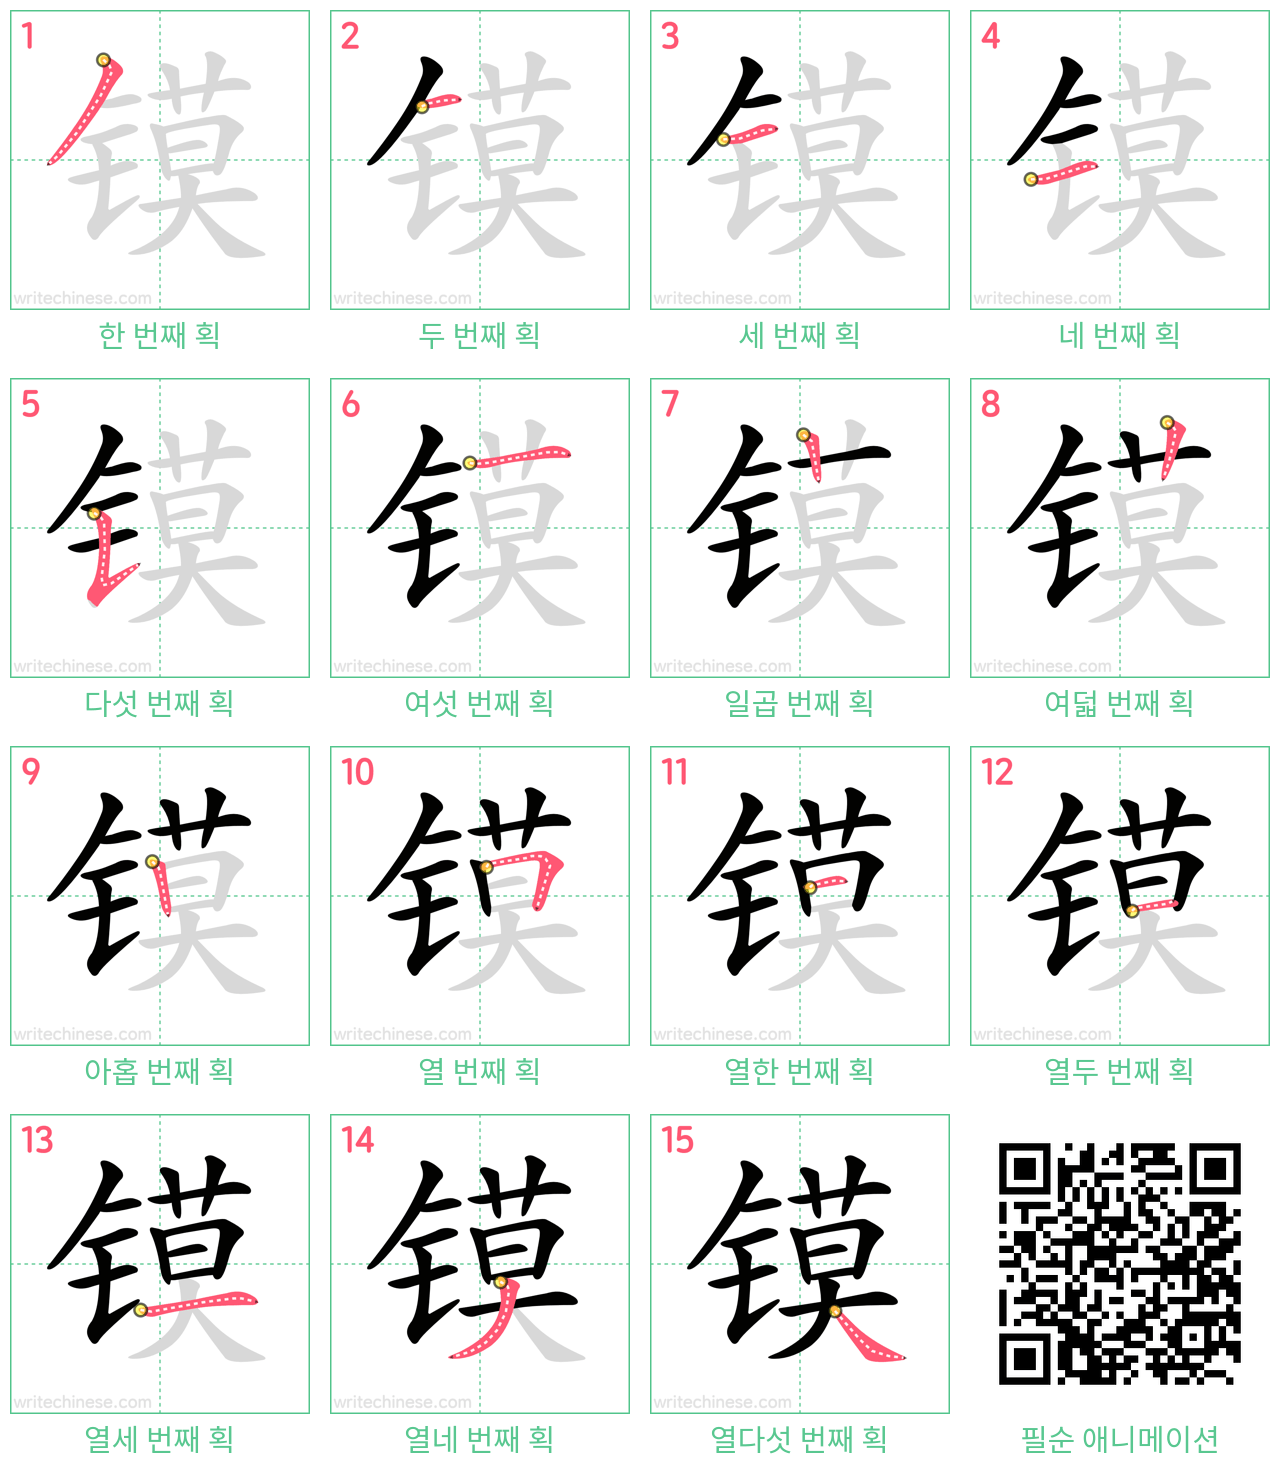 镆 step-by-step stroke order diagrams